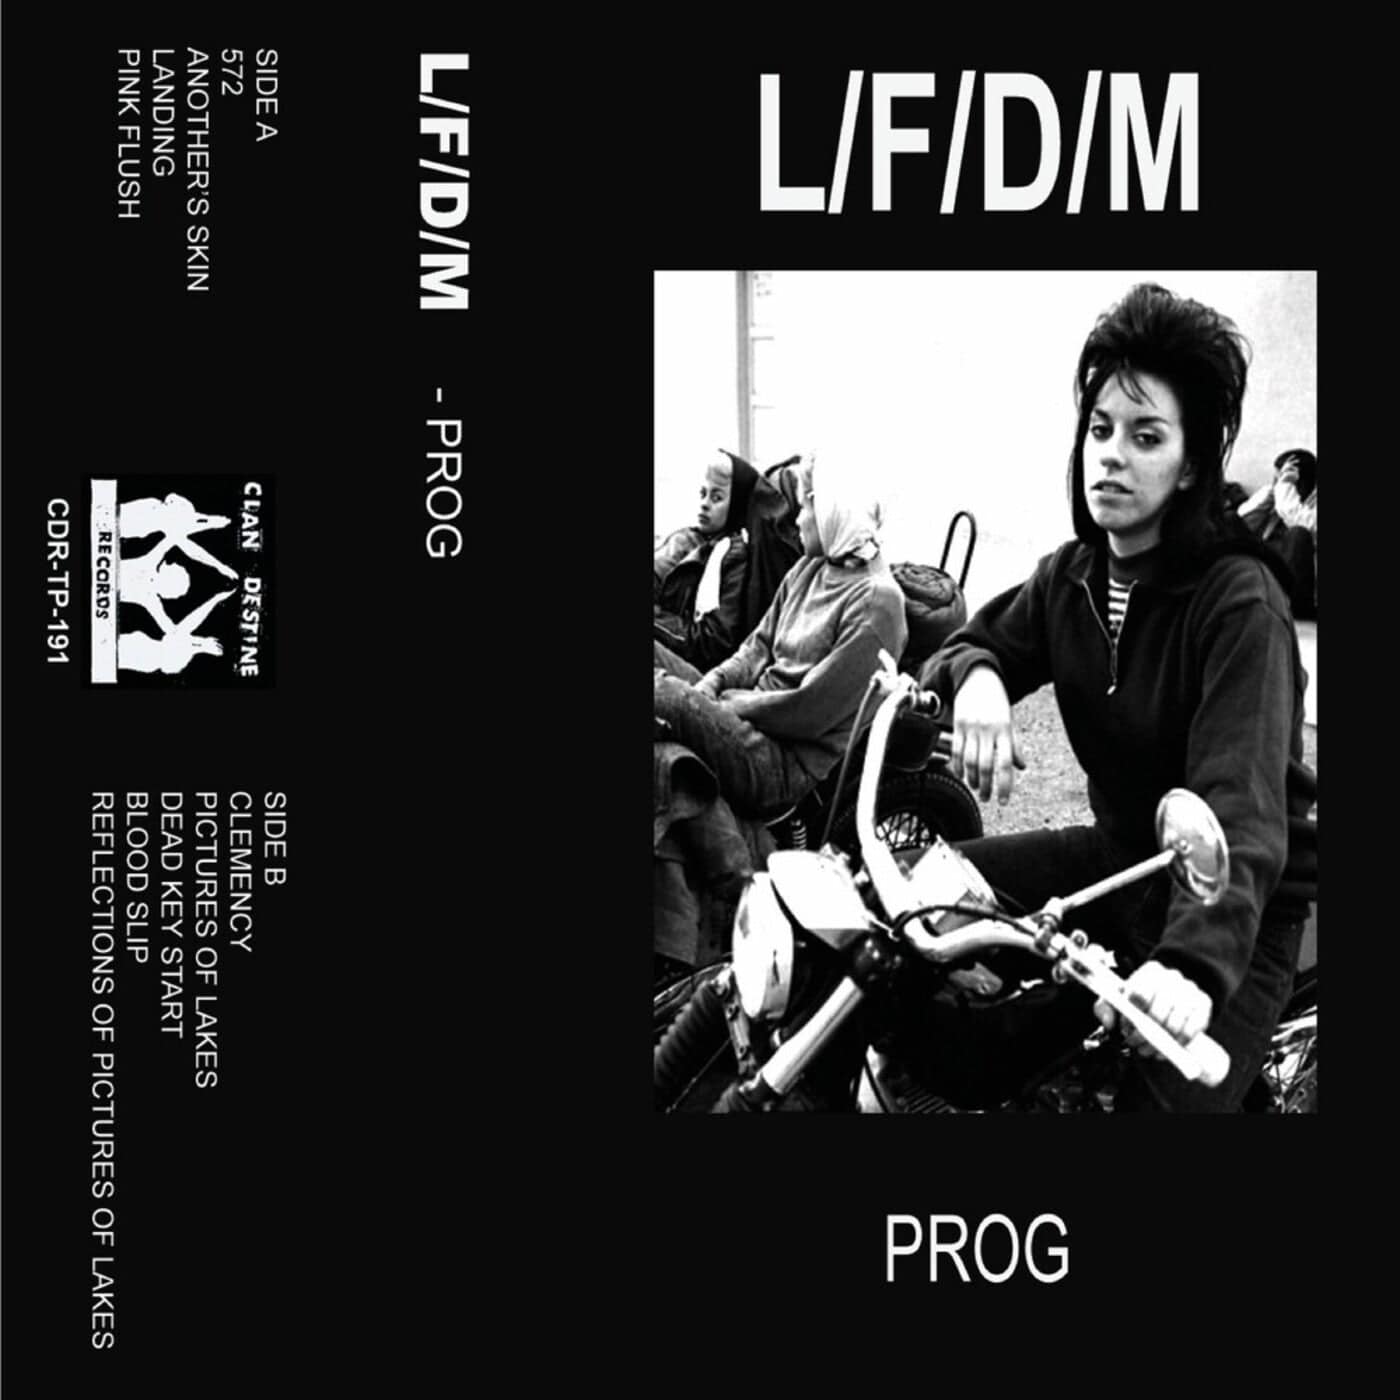 Download L/F/D/M - Prog on Electrobuzz